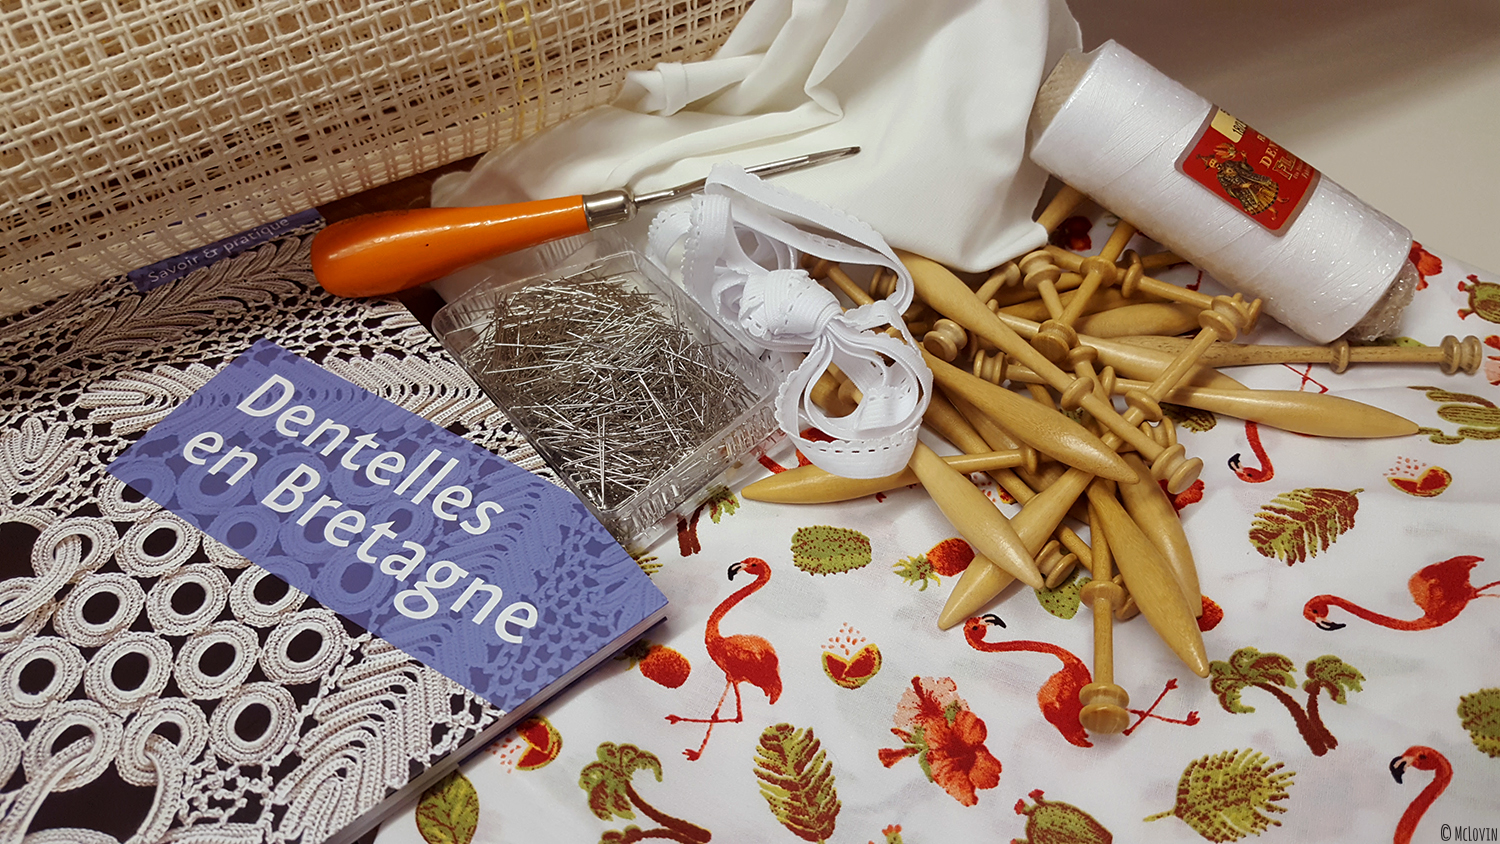 Matériel de travaux manuels / DIY acheté à Ecolaines à Rennes pour faire de la couture, de la dentelle aux fuseaux et un tapis au point noué.